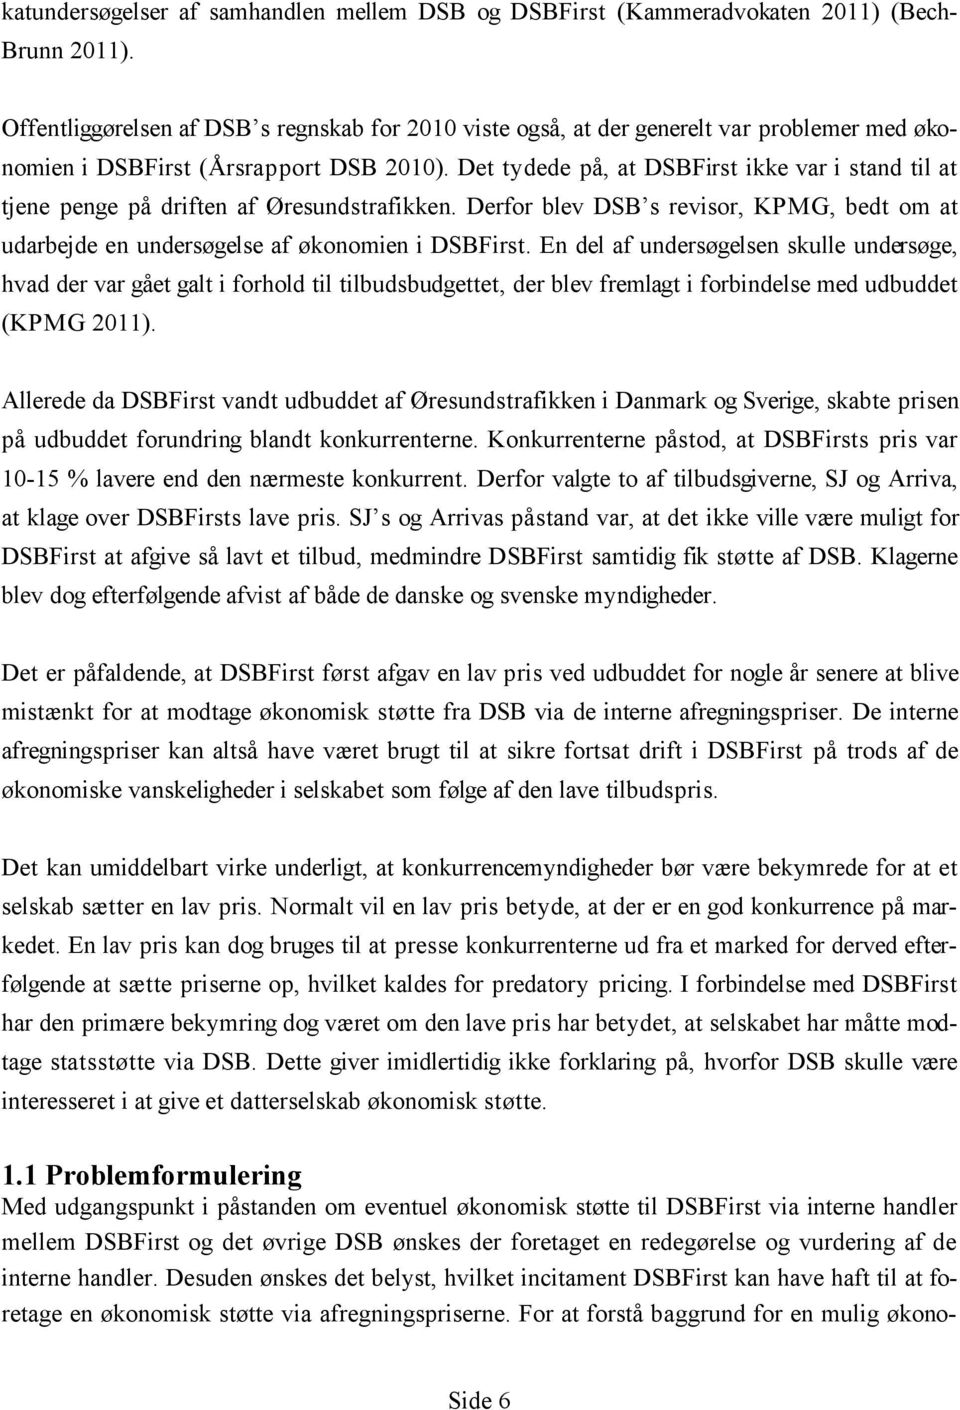 Det tydede på, at DSBFirst ikke var i stand til at tjene penge på driften af Øresundstrafikken. Derfor blev DSB s revisor, KPMG, bedt om at udarbejde en undersøgelse af økonomien i DSBFirst.